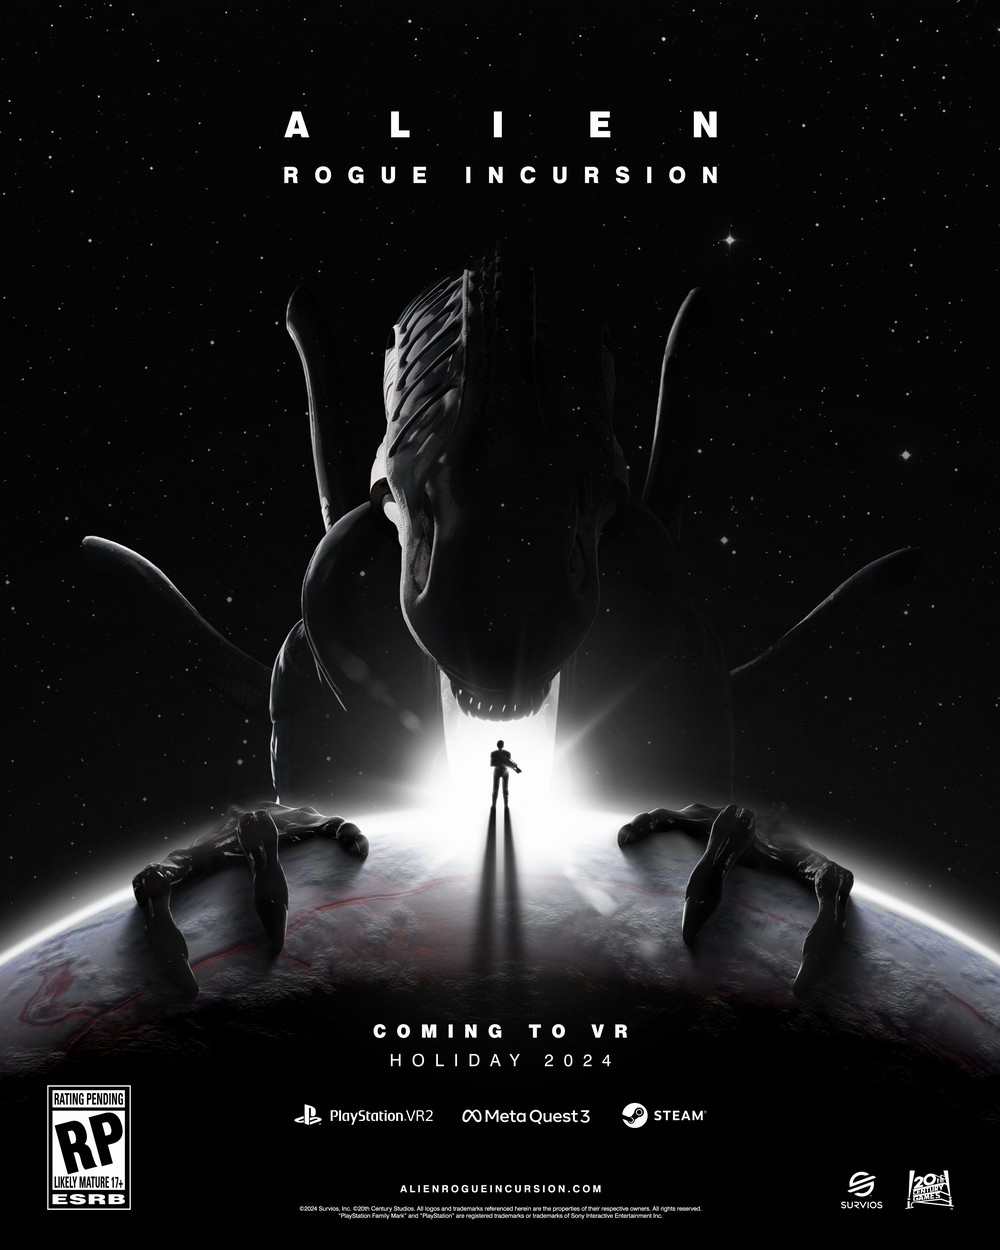 ALIEN: ROGUE INCURSION, первая VR-игра в жанре экшн-хоррор, действие которой происходит во вселенной Alien, выйдет в 2024 году от ведущего разработчика игр Survios